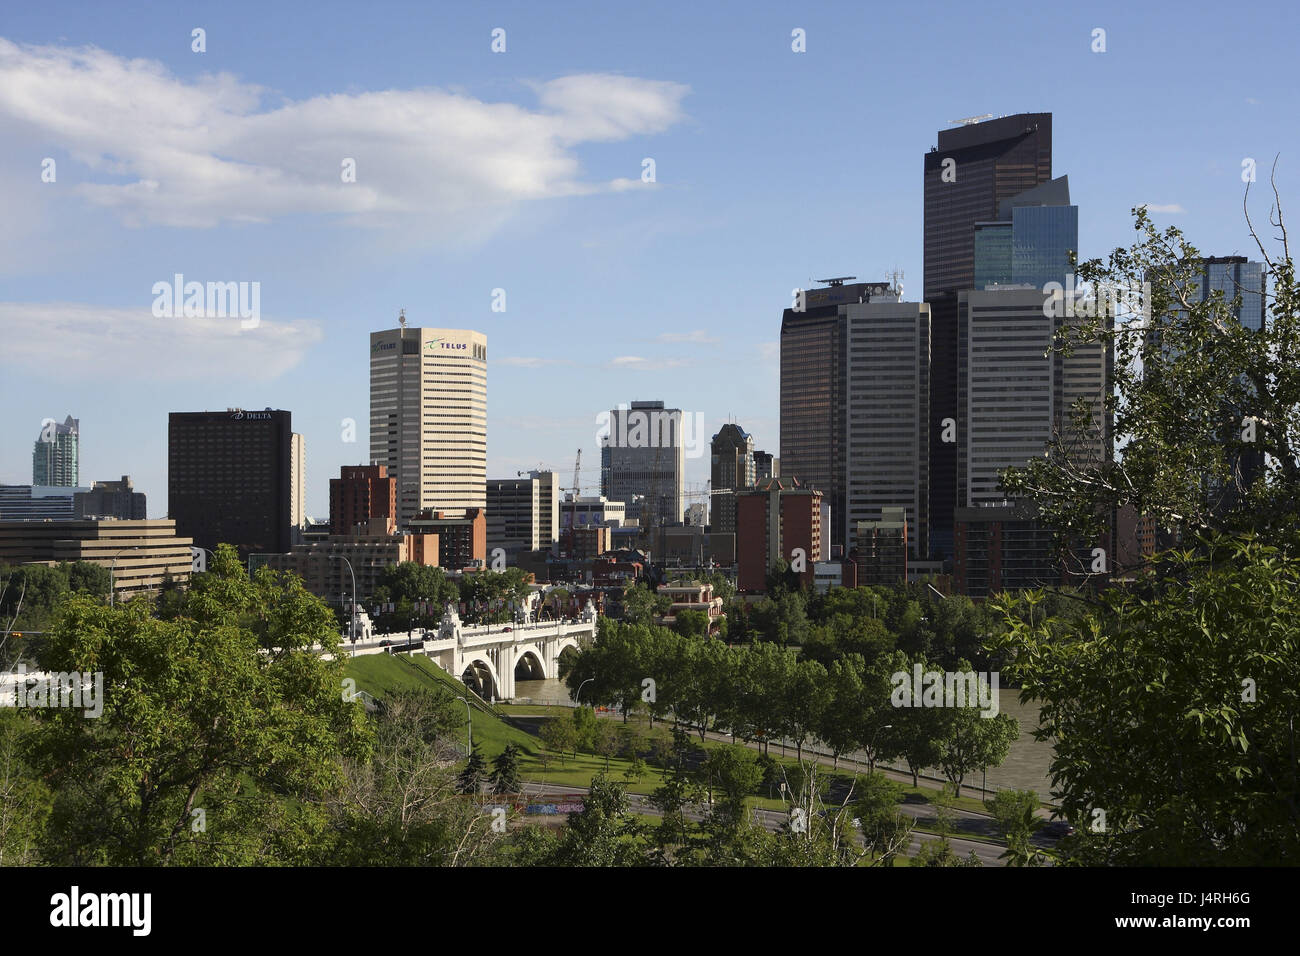 Vista sulla città di Calgary, skyline, alta sorge, fiume, bridge, Canada, Alberta, Calgary, centro della città, il fiume Bow, Centro Street Bridge, Foto Stock